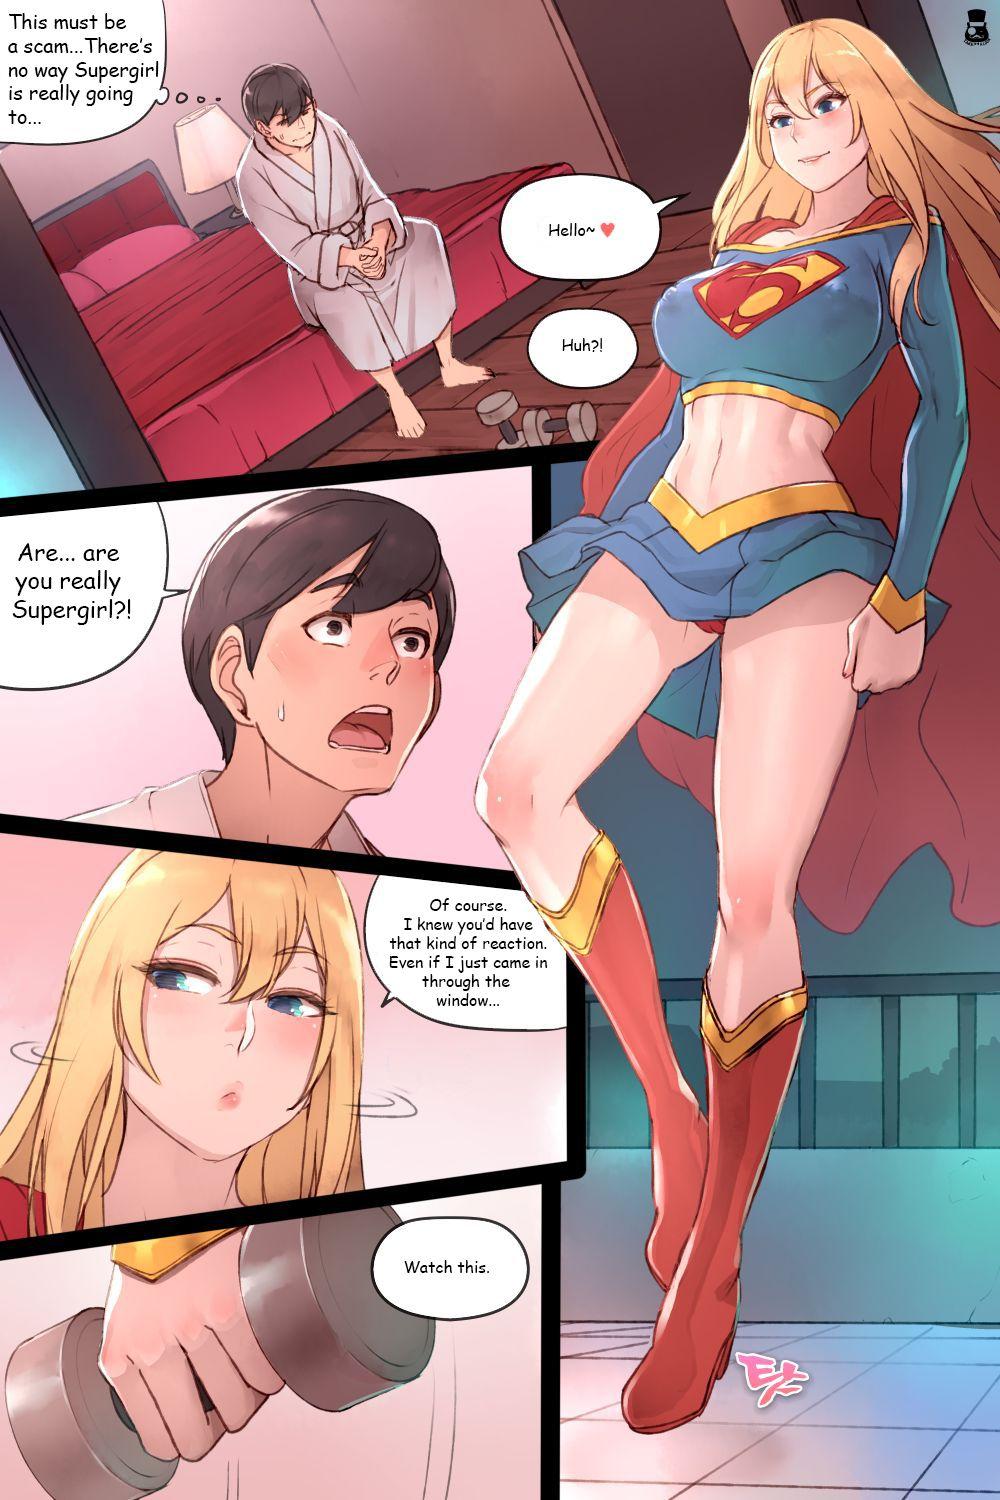 Supergirl's Secret Service 1